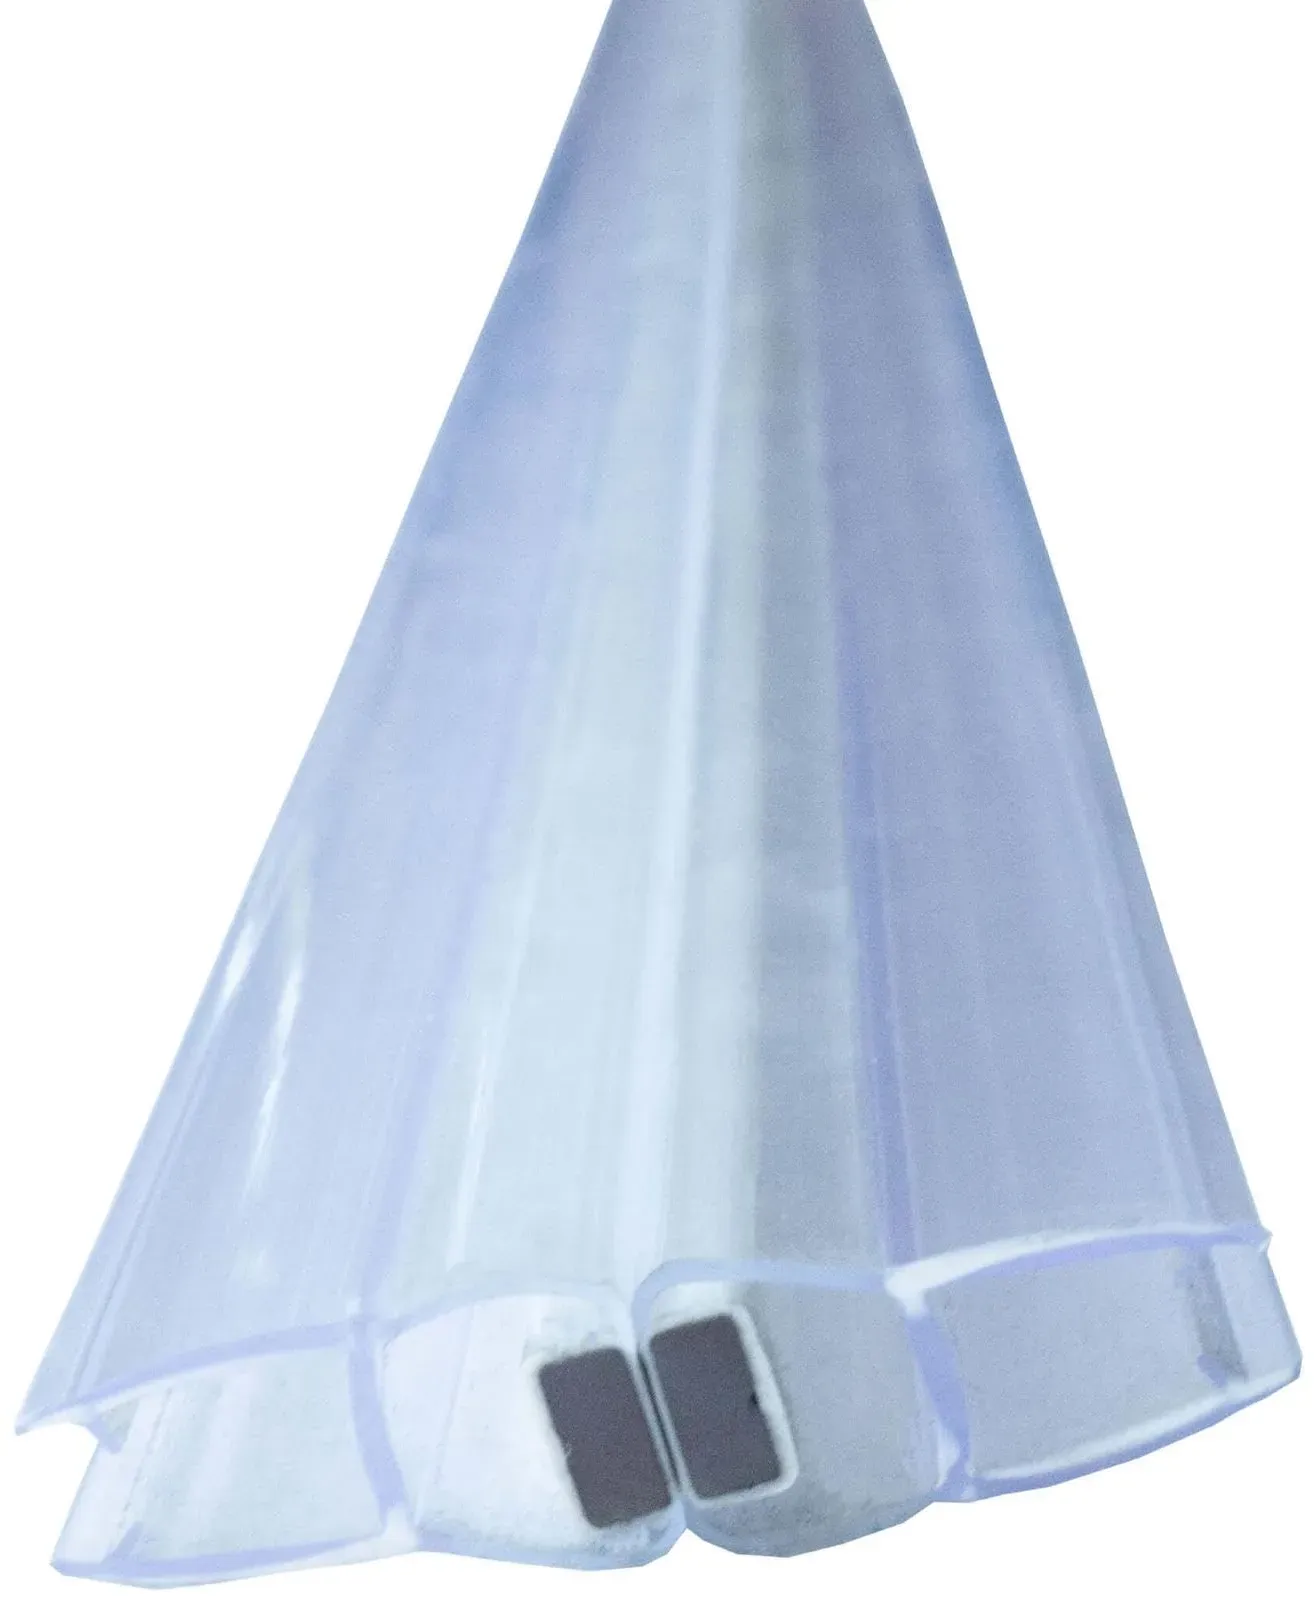 Bagnoxx Duschdichtung Magnetdichtung für Duschtüren 180 Grad 200cm, 2-teilig 6mm Glasstärke, 200cm Transparent Schiebetür oder Pendeltür im 180 Grad Schließwinkel, PVC Duschlippe